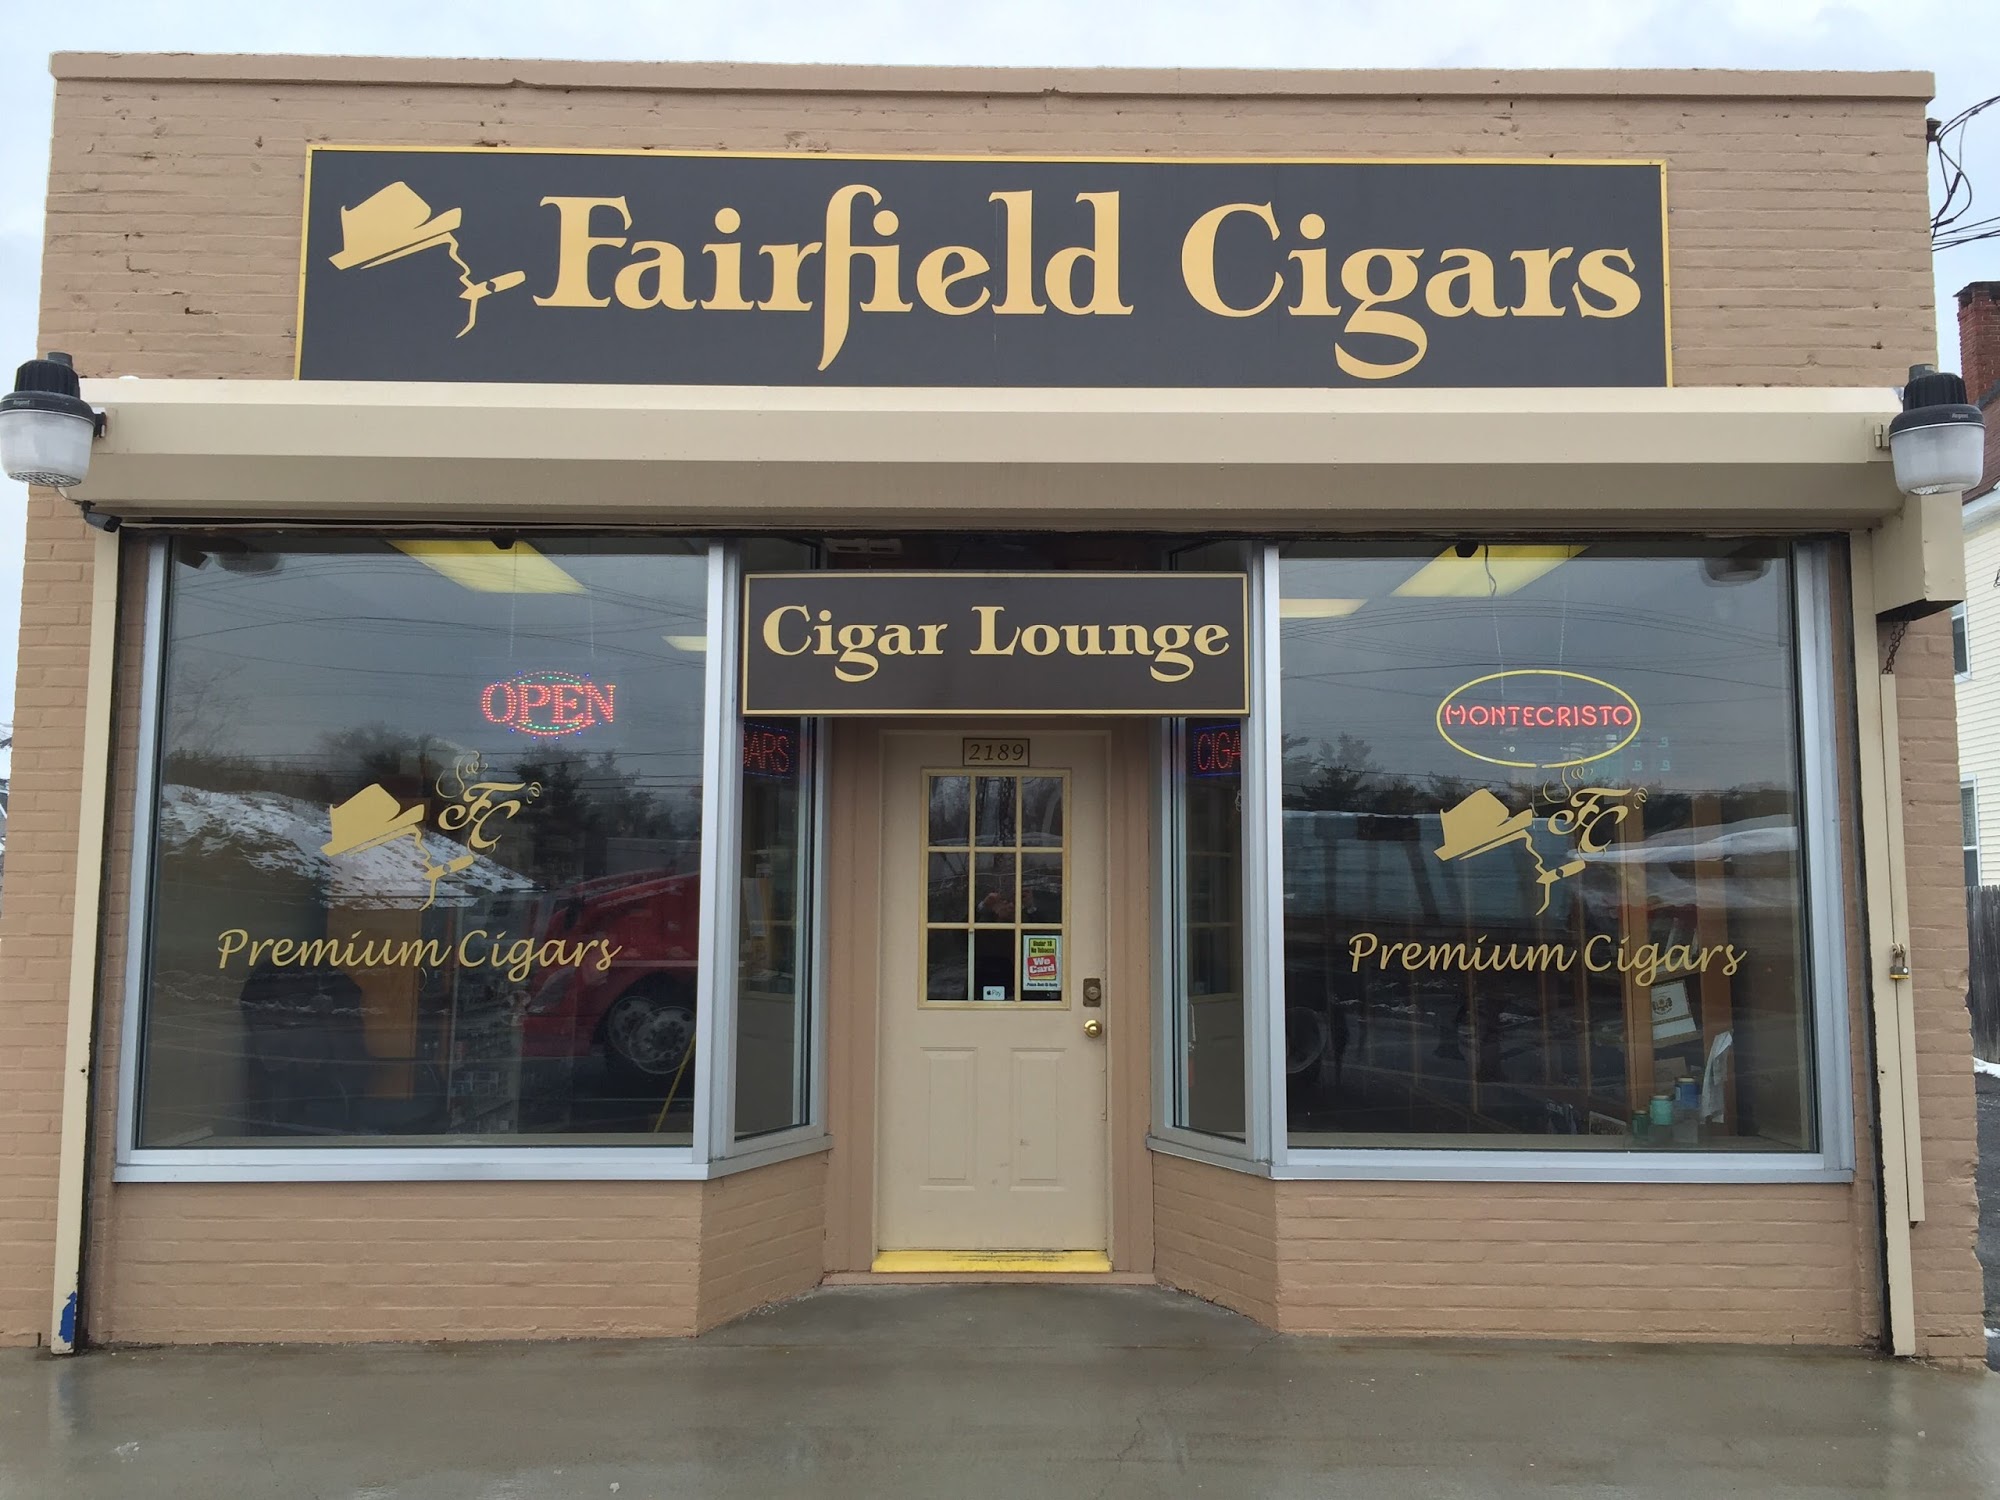 Fairfield Cigars